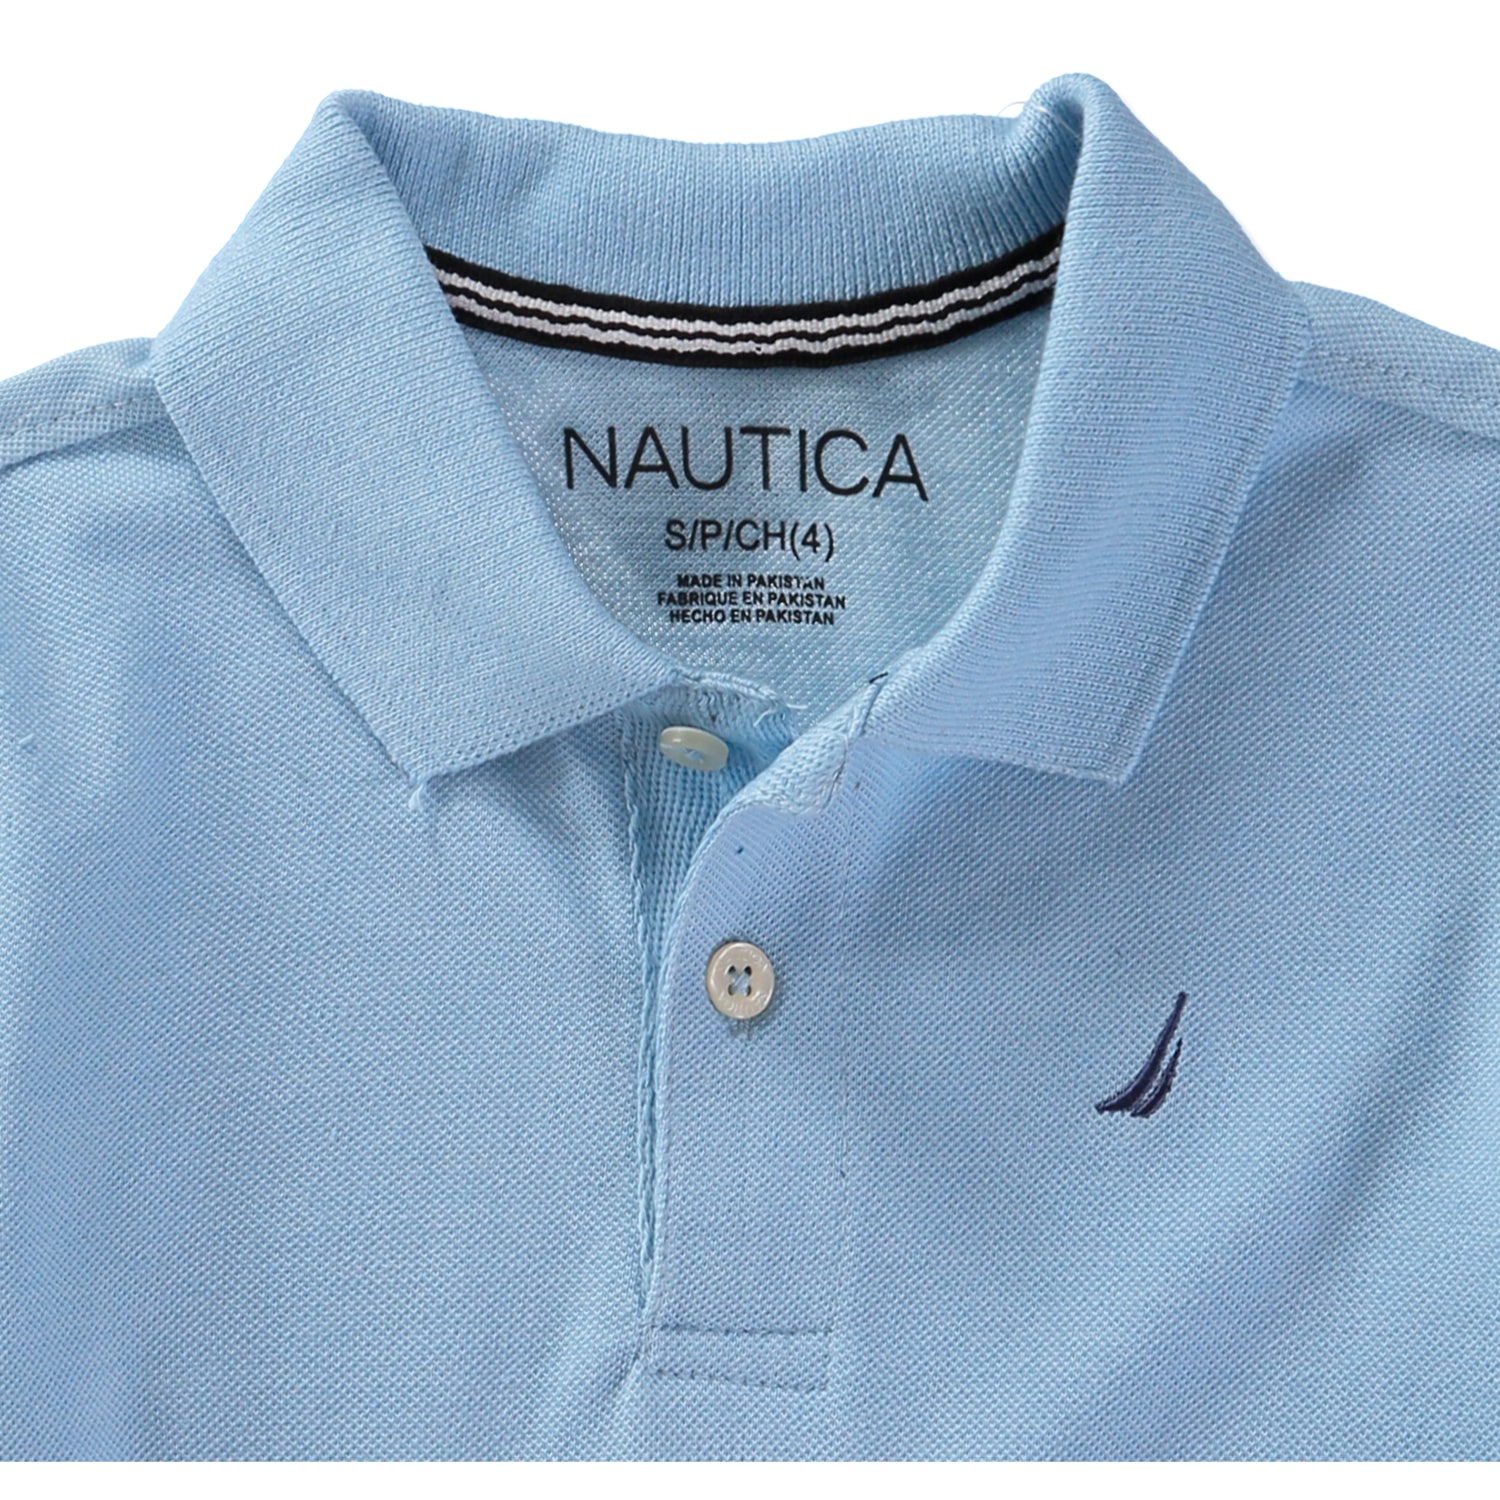 Nautica Boys 8-20 Short Sleeve Pique Polo Shirt